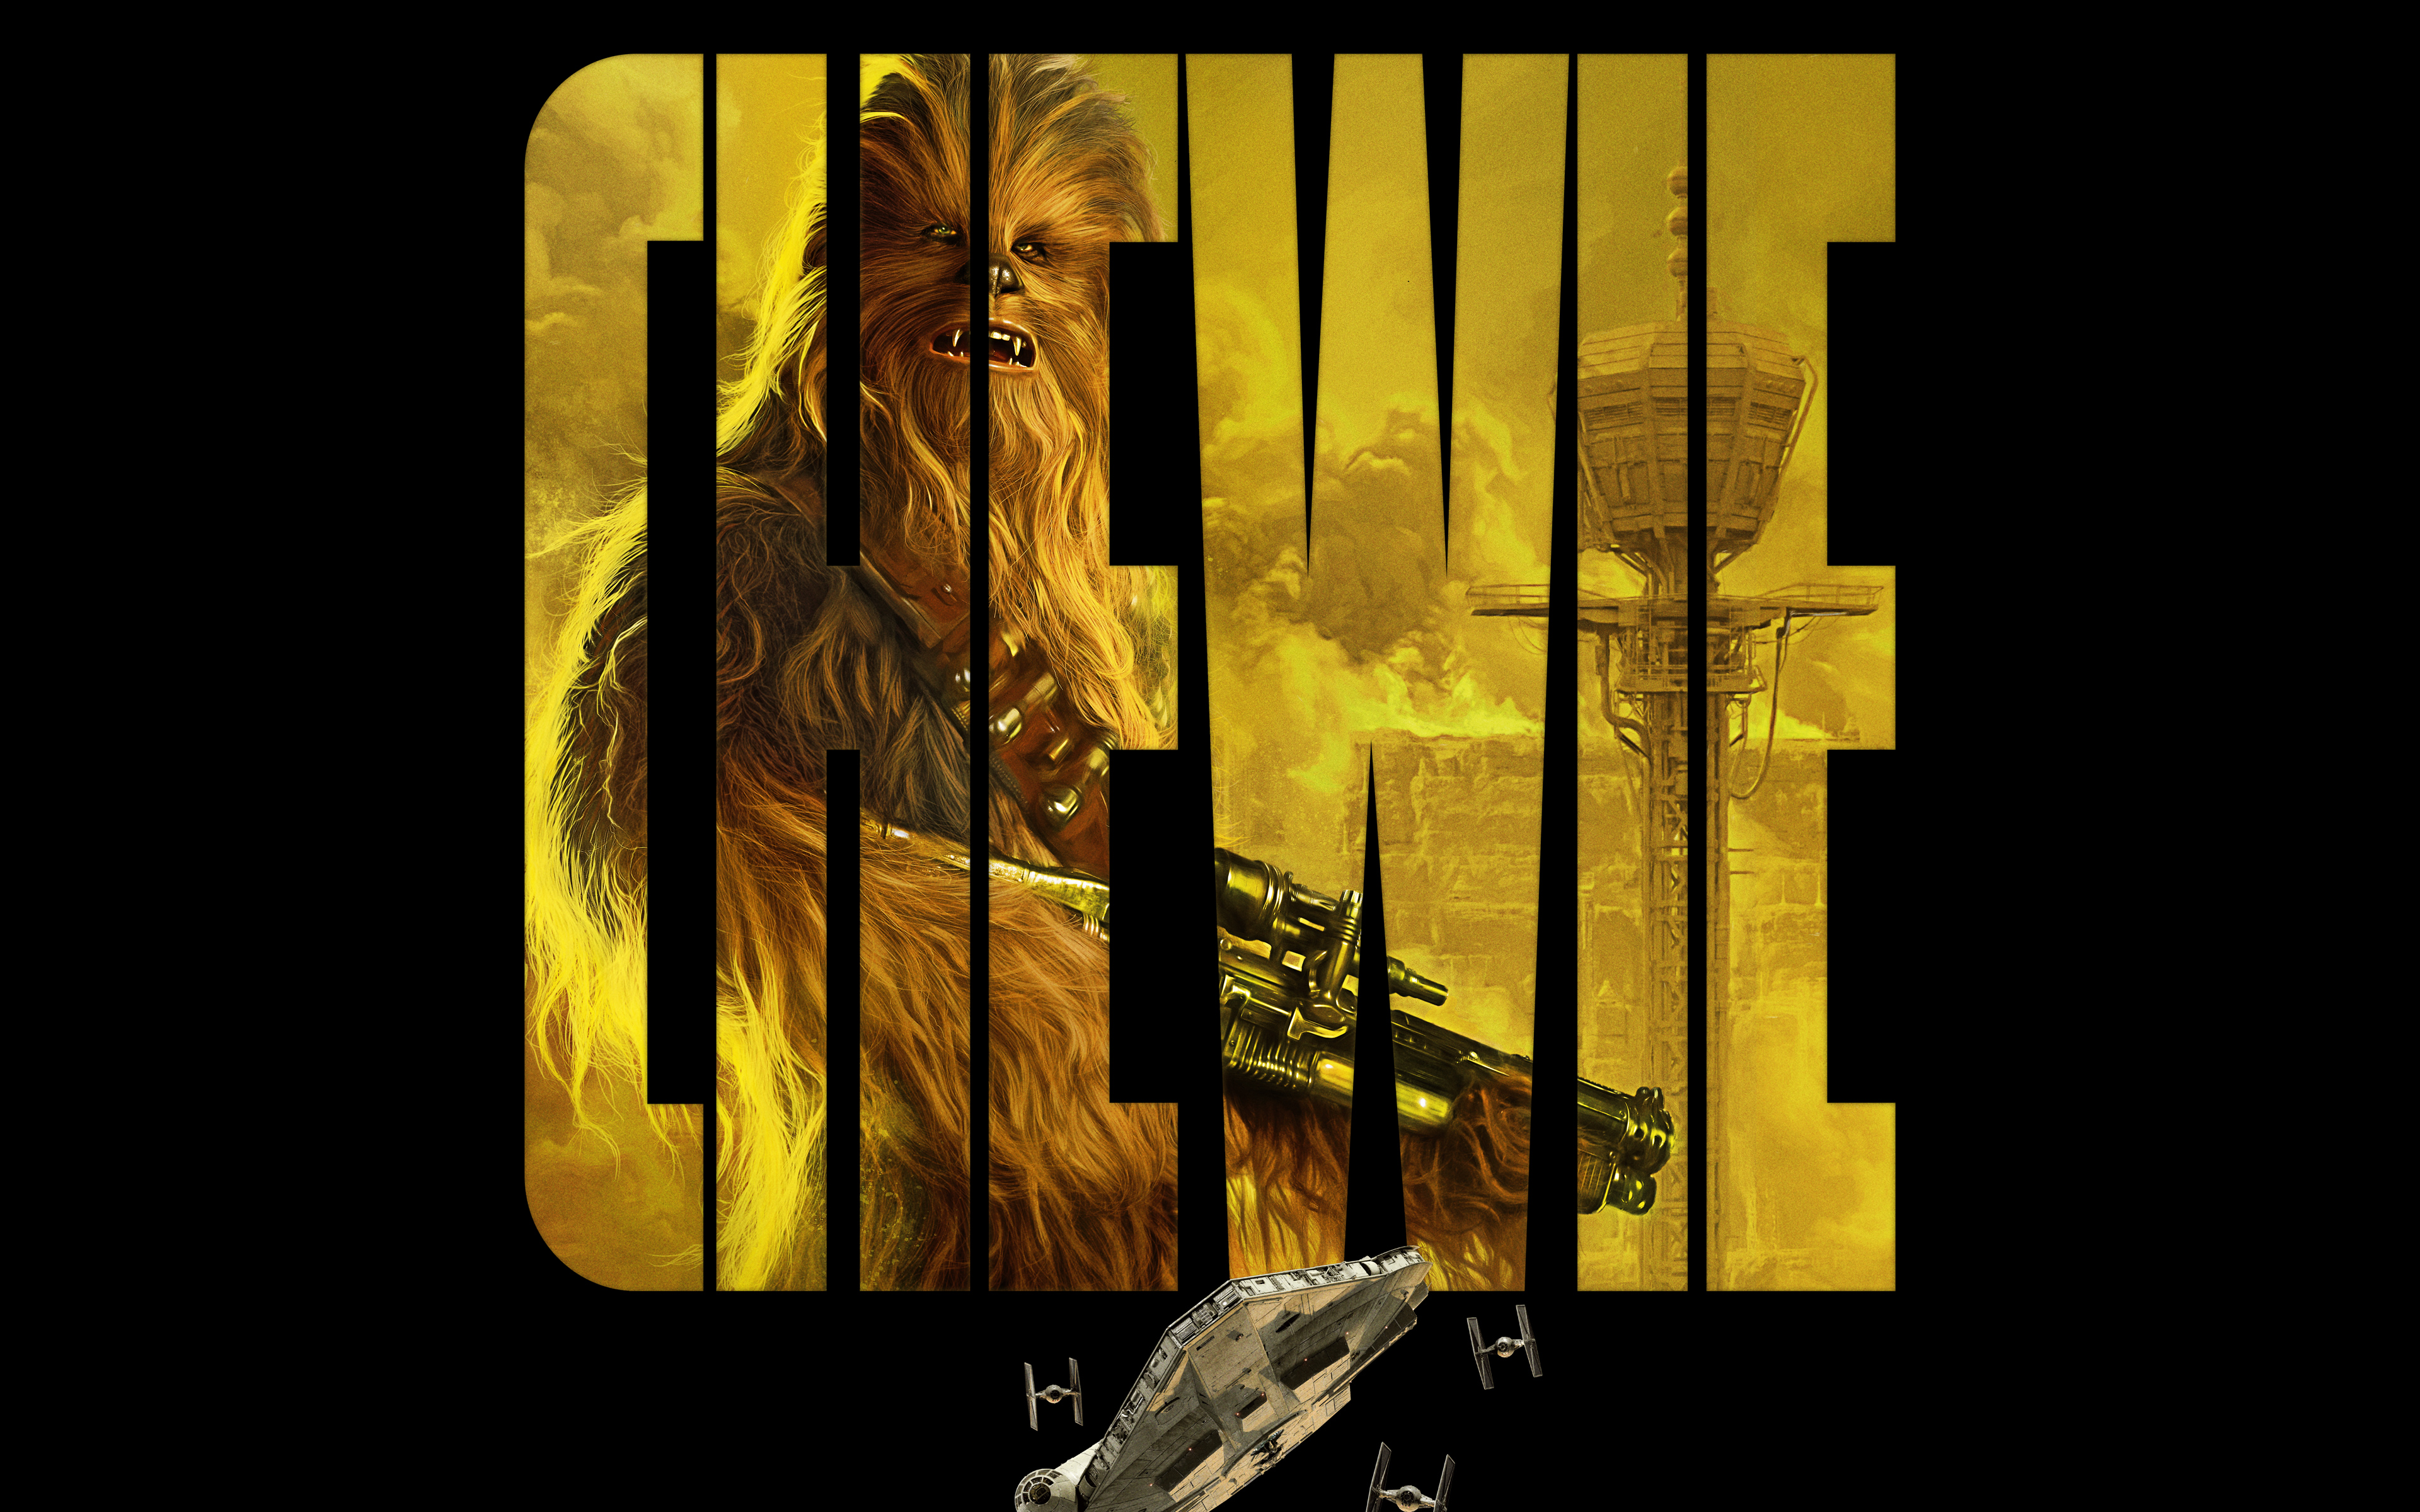 Chewie in Solo A Star Wars Story 4K 8K1170712920 - Chewie in Solo A Star Wars Story 4K 8K - Wars, Story, Star, Solo, Lawrence, Chewie